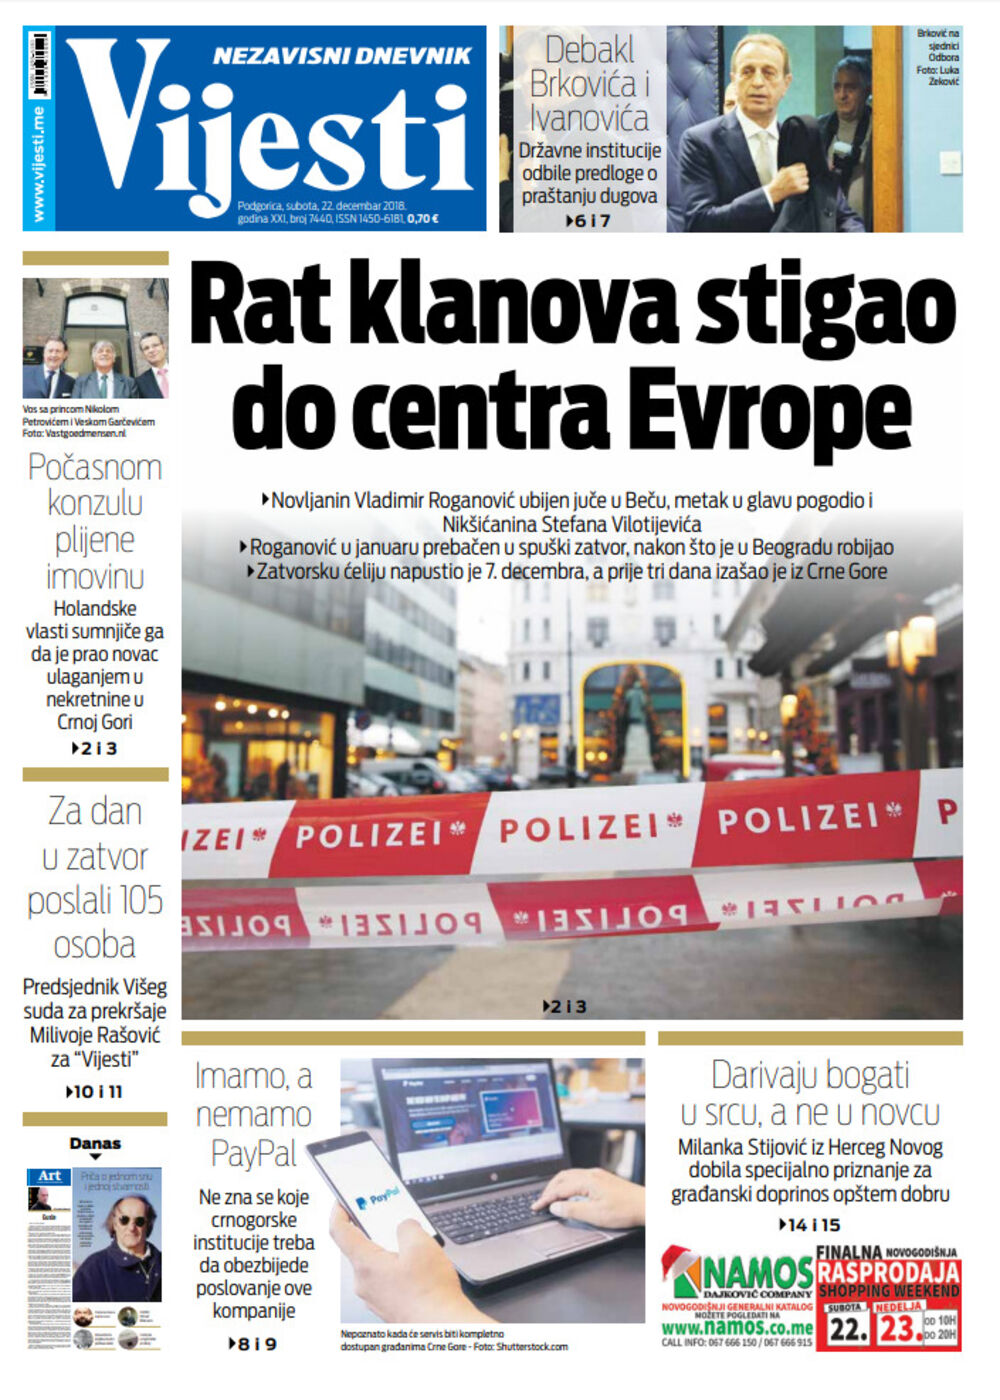 Naslovna strana Vijesti, Foto: Vijesti